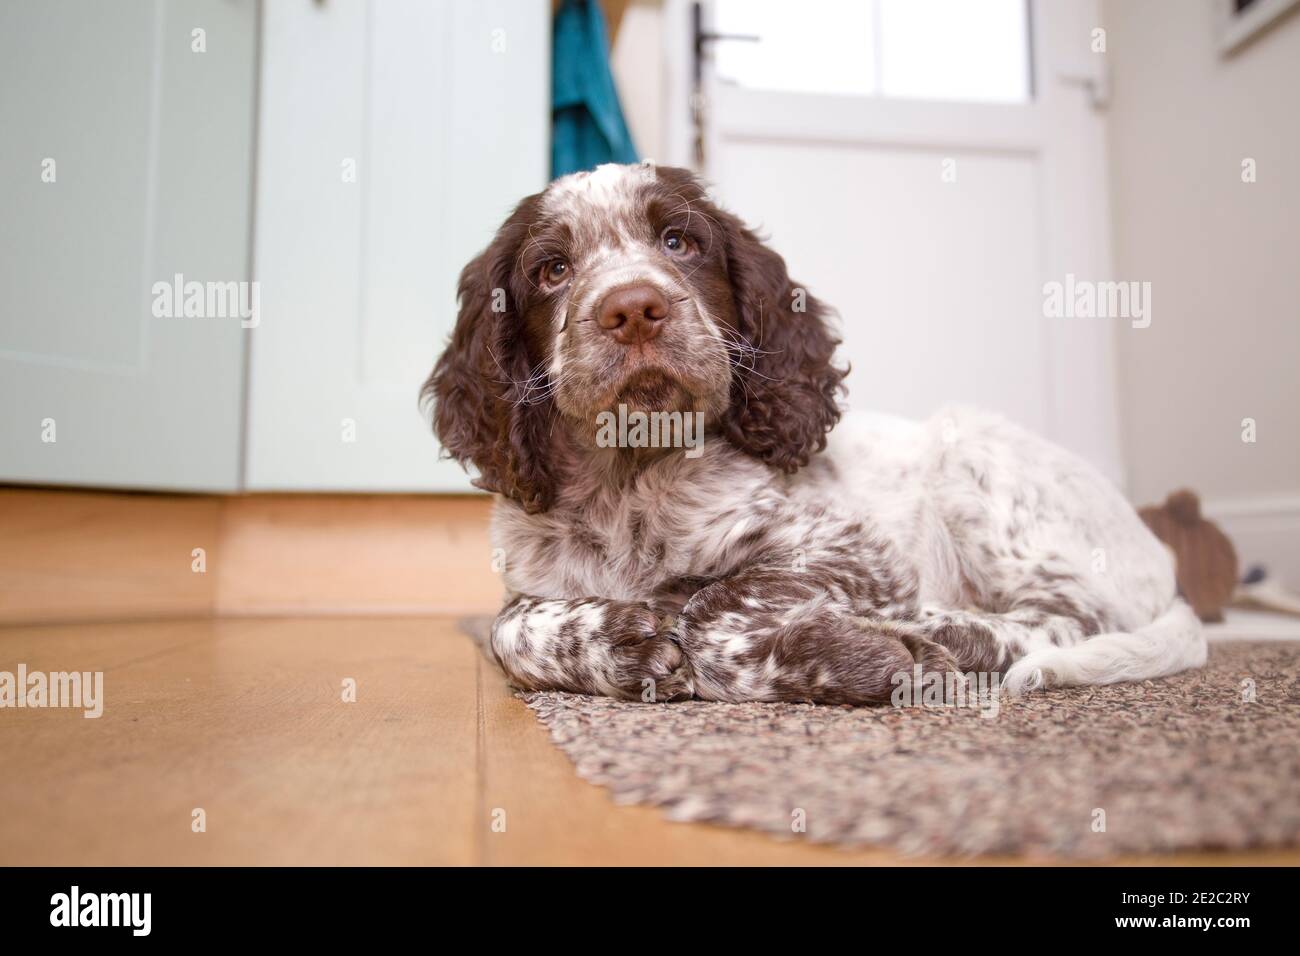 Field spaniel puppy sat on floor Stock Photo